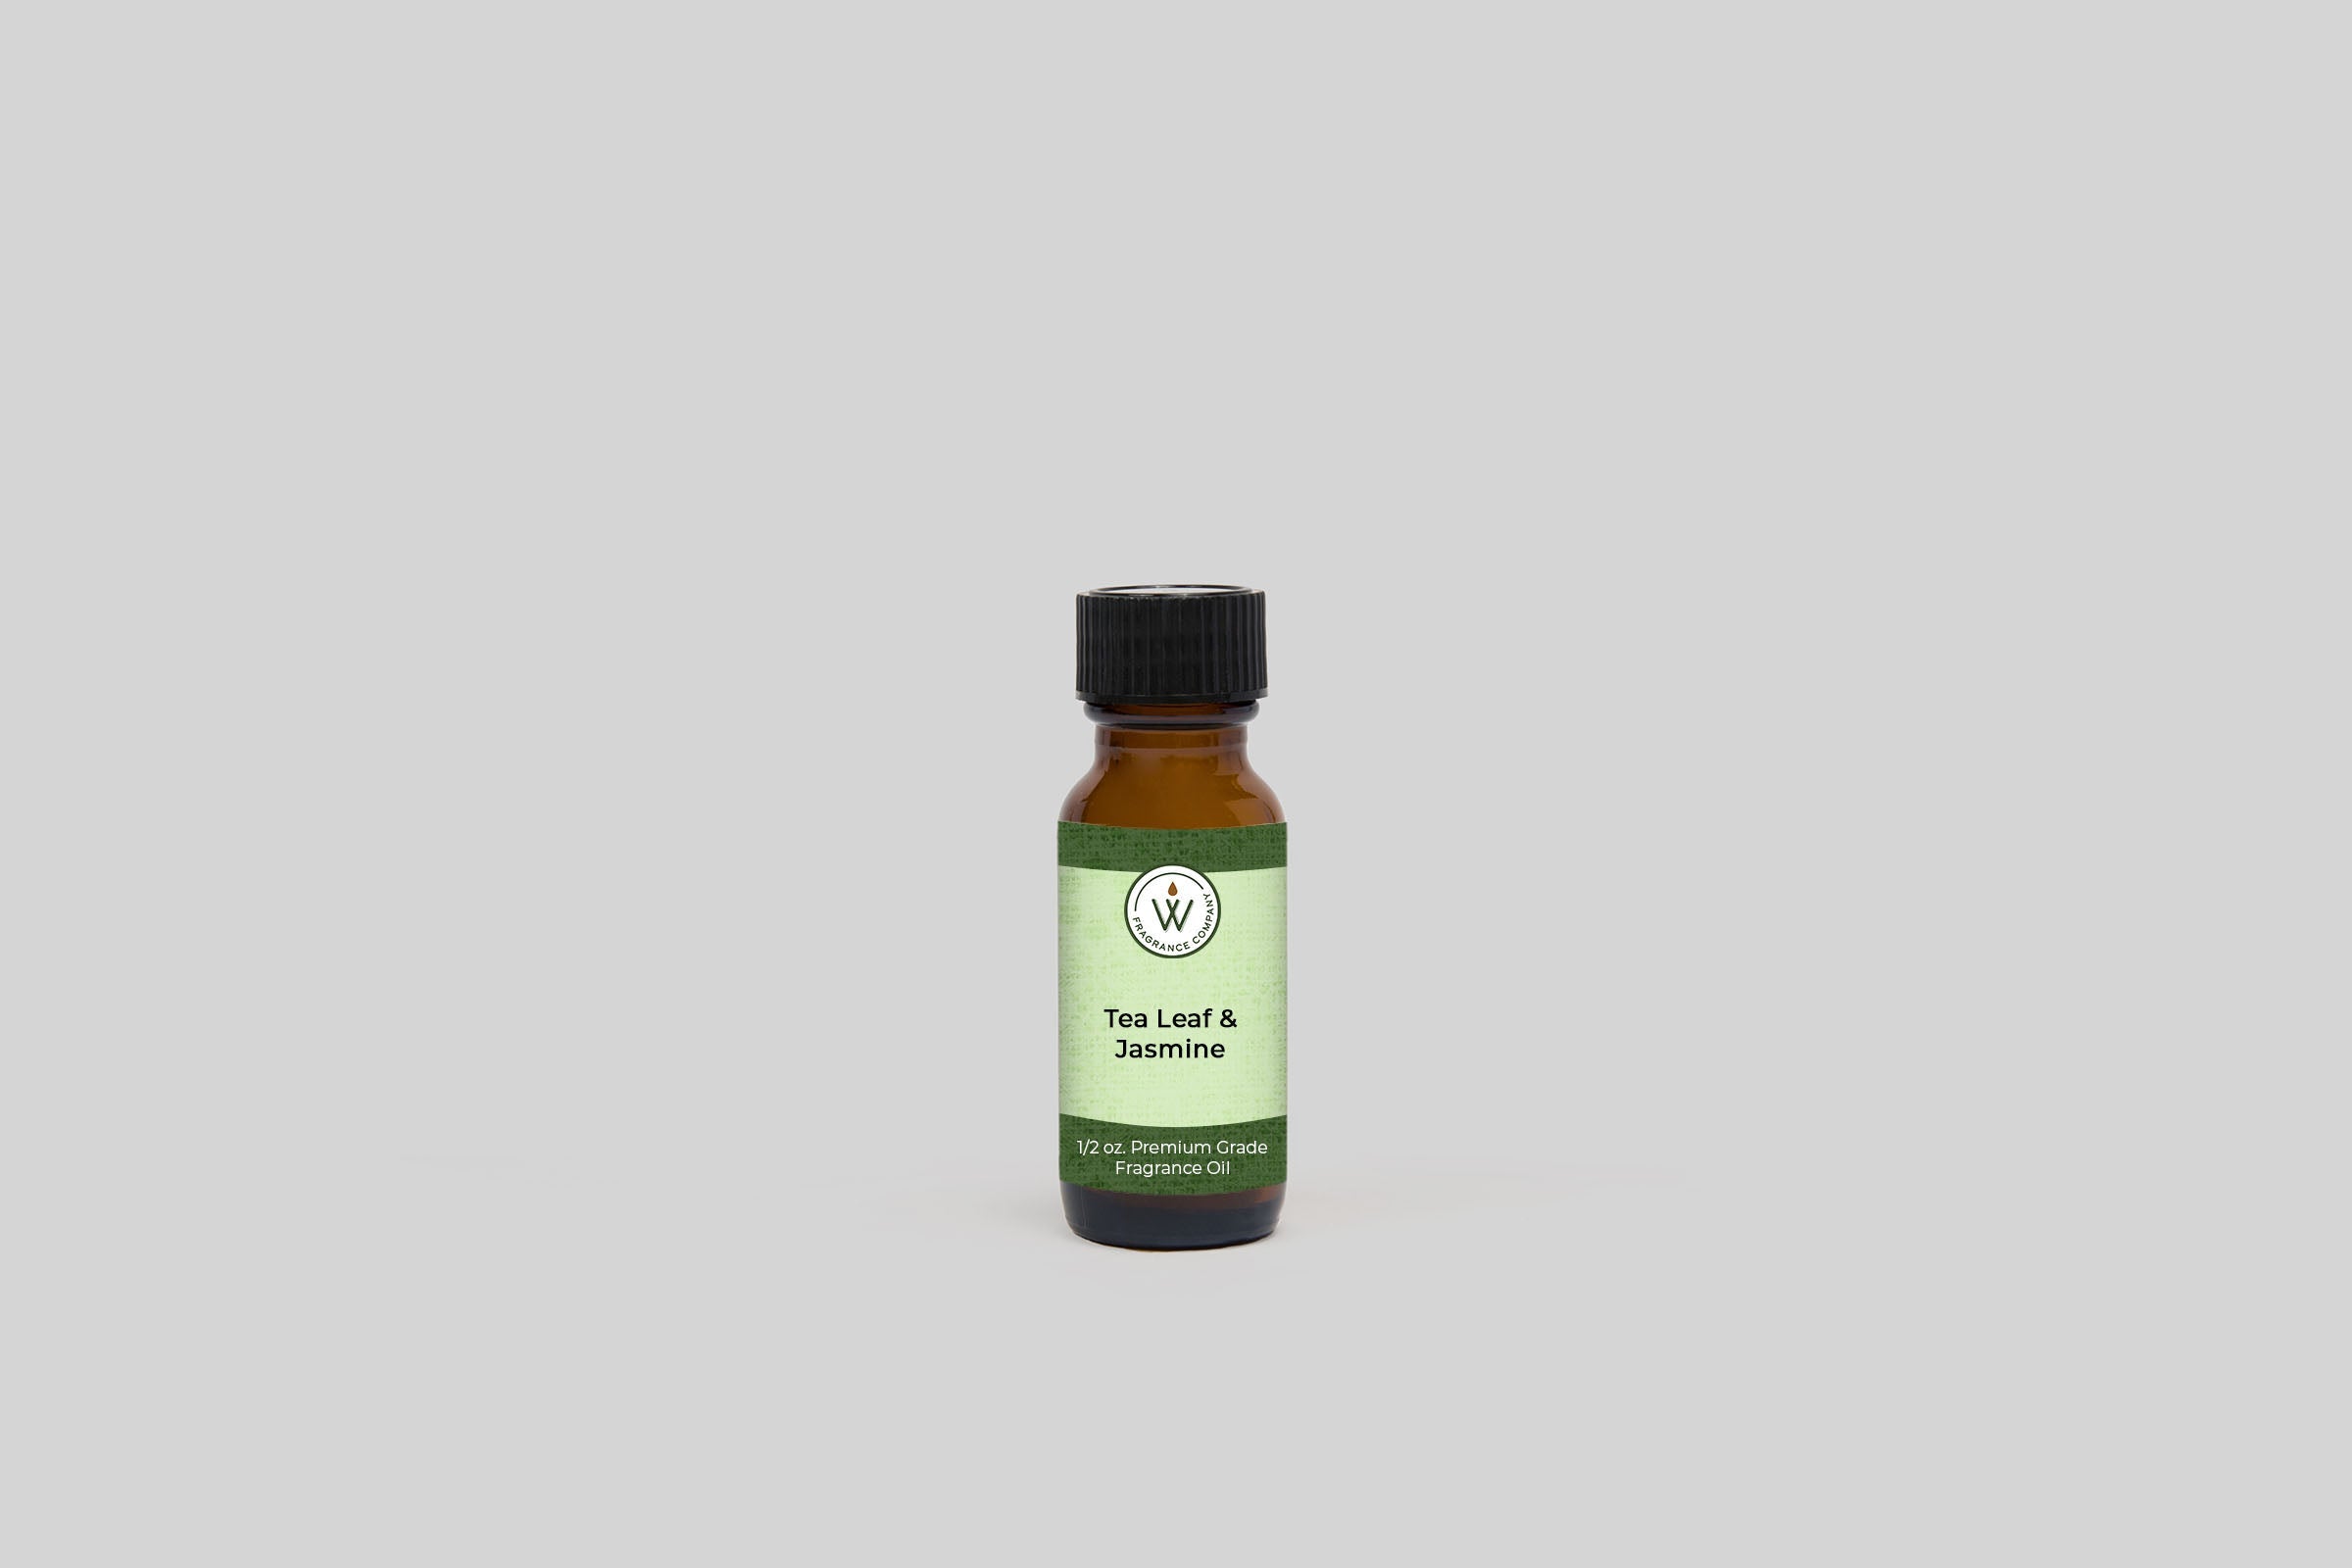 Tea Leaf & Jasmine Fragrance Oil